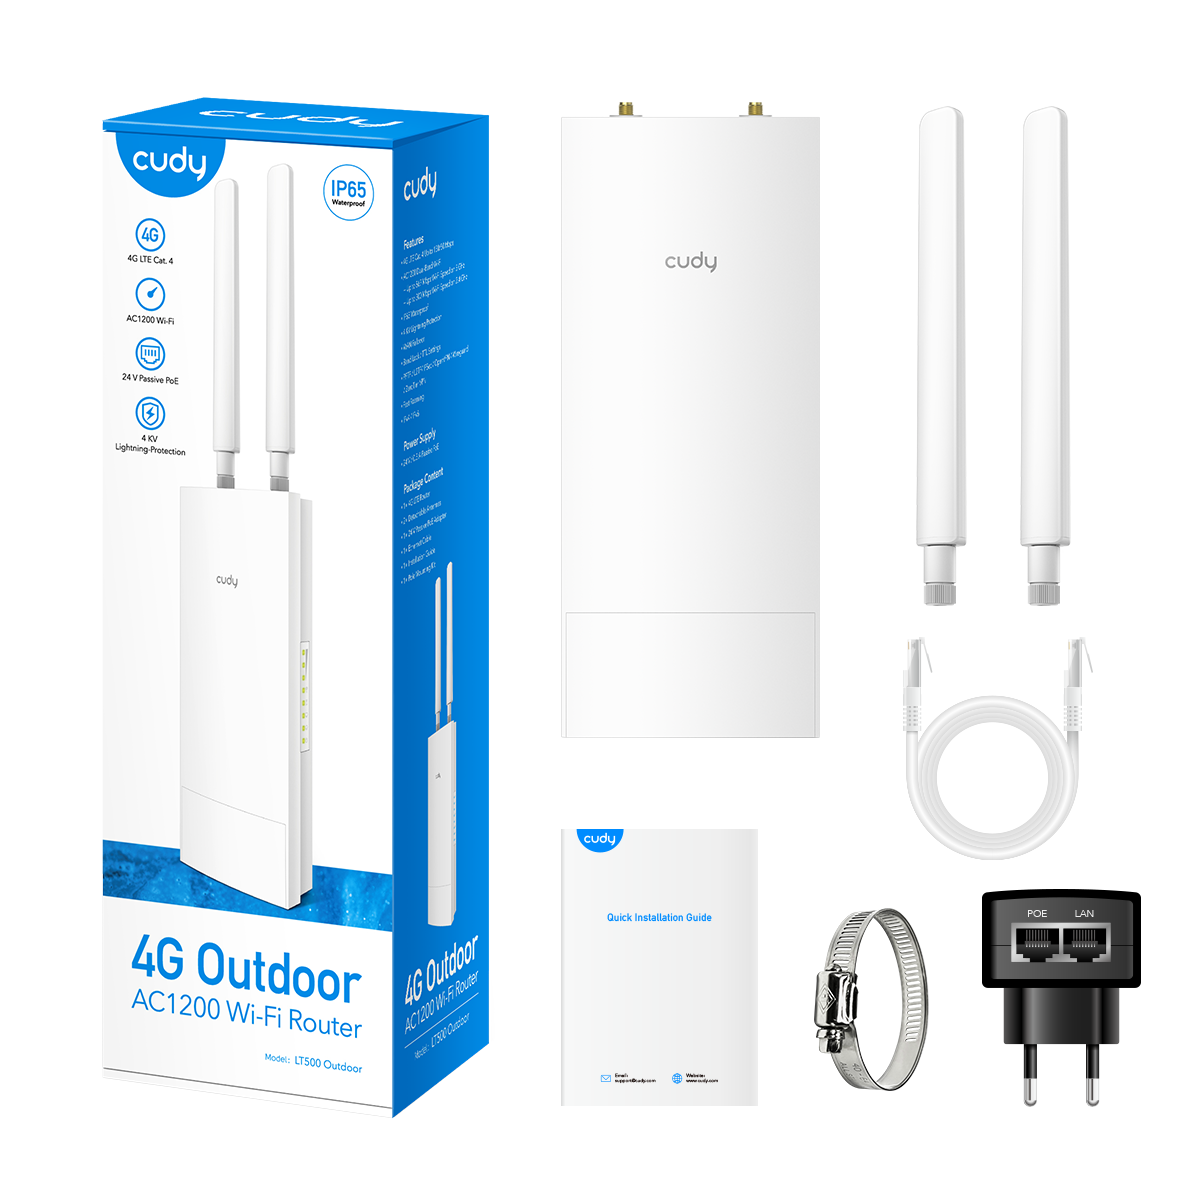 Outdoor/Indoor 4G AC1200 Wi-Fi Router, LT500 Outdoor 1.0